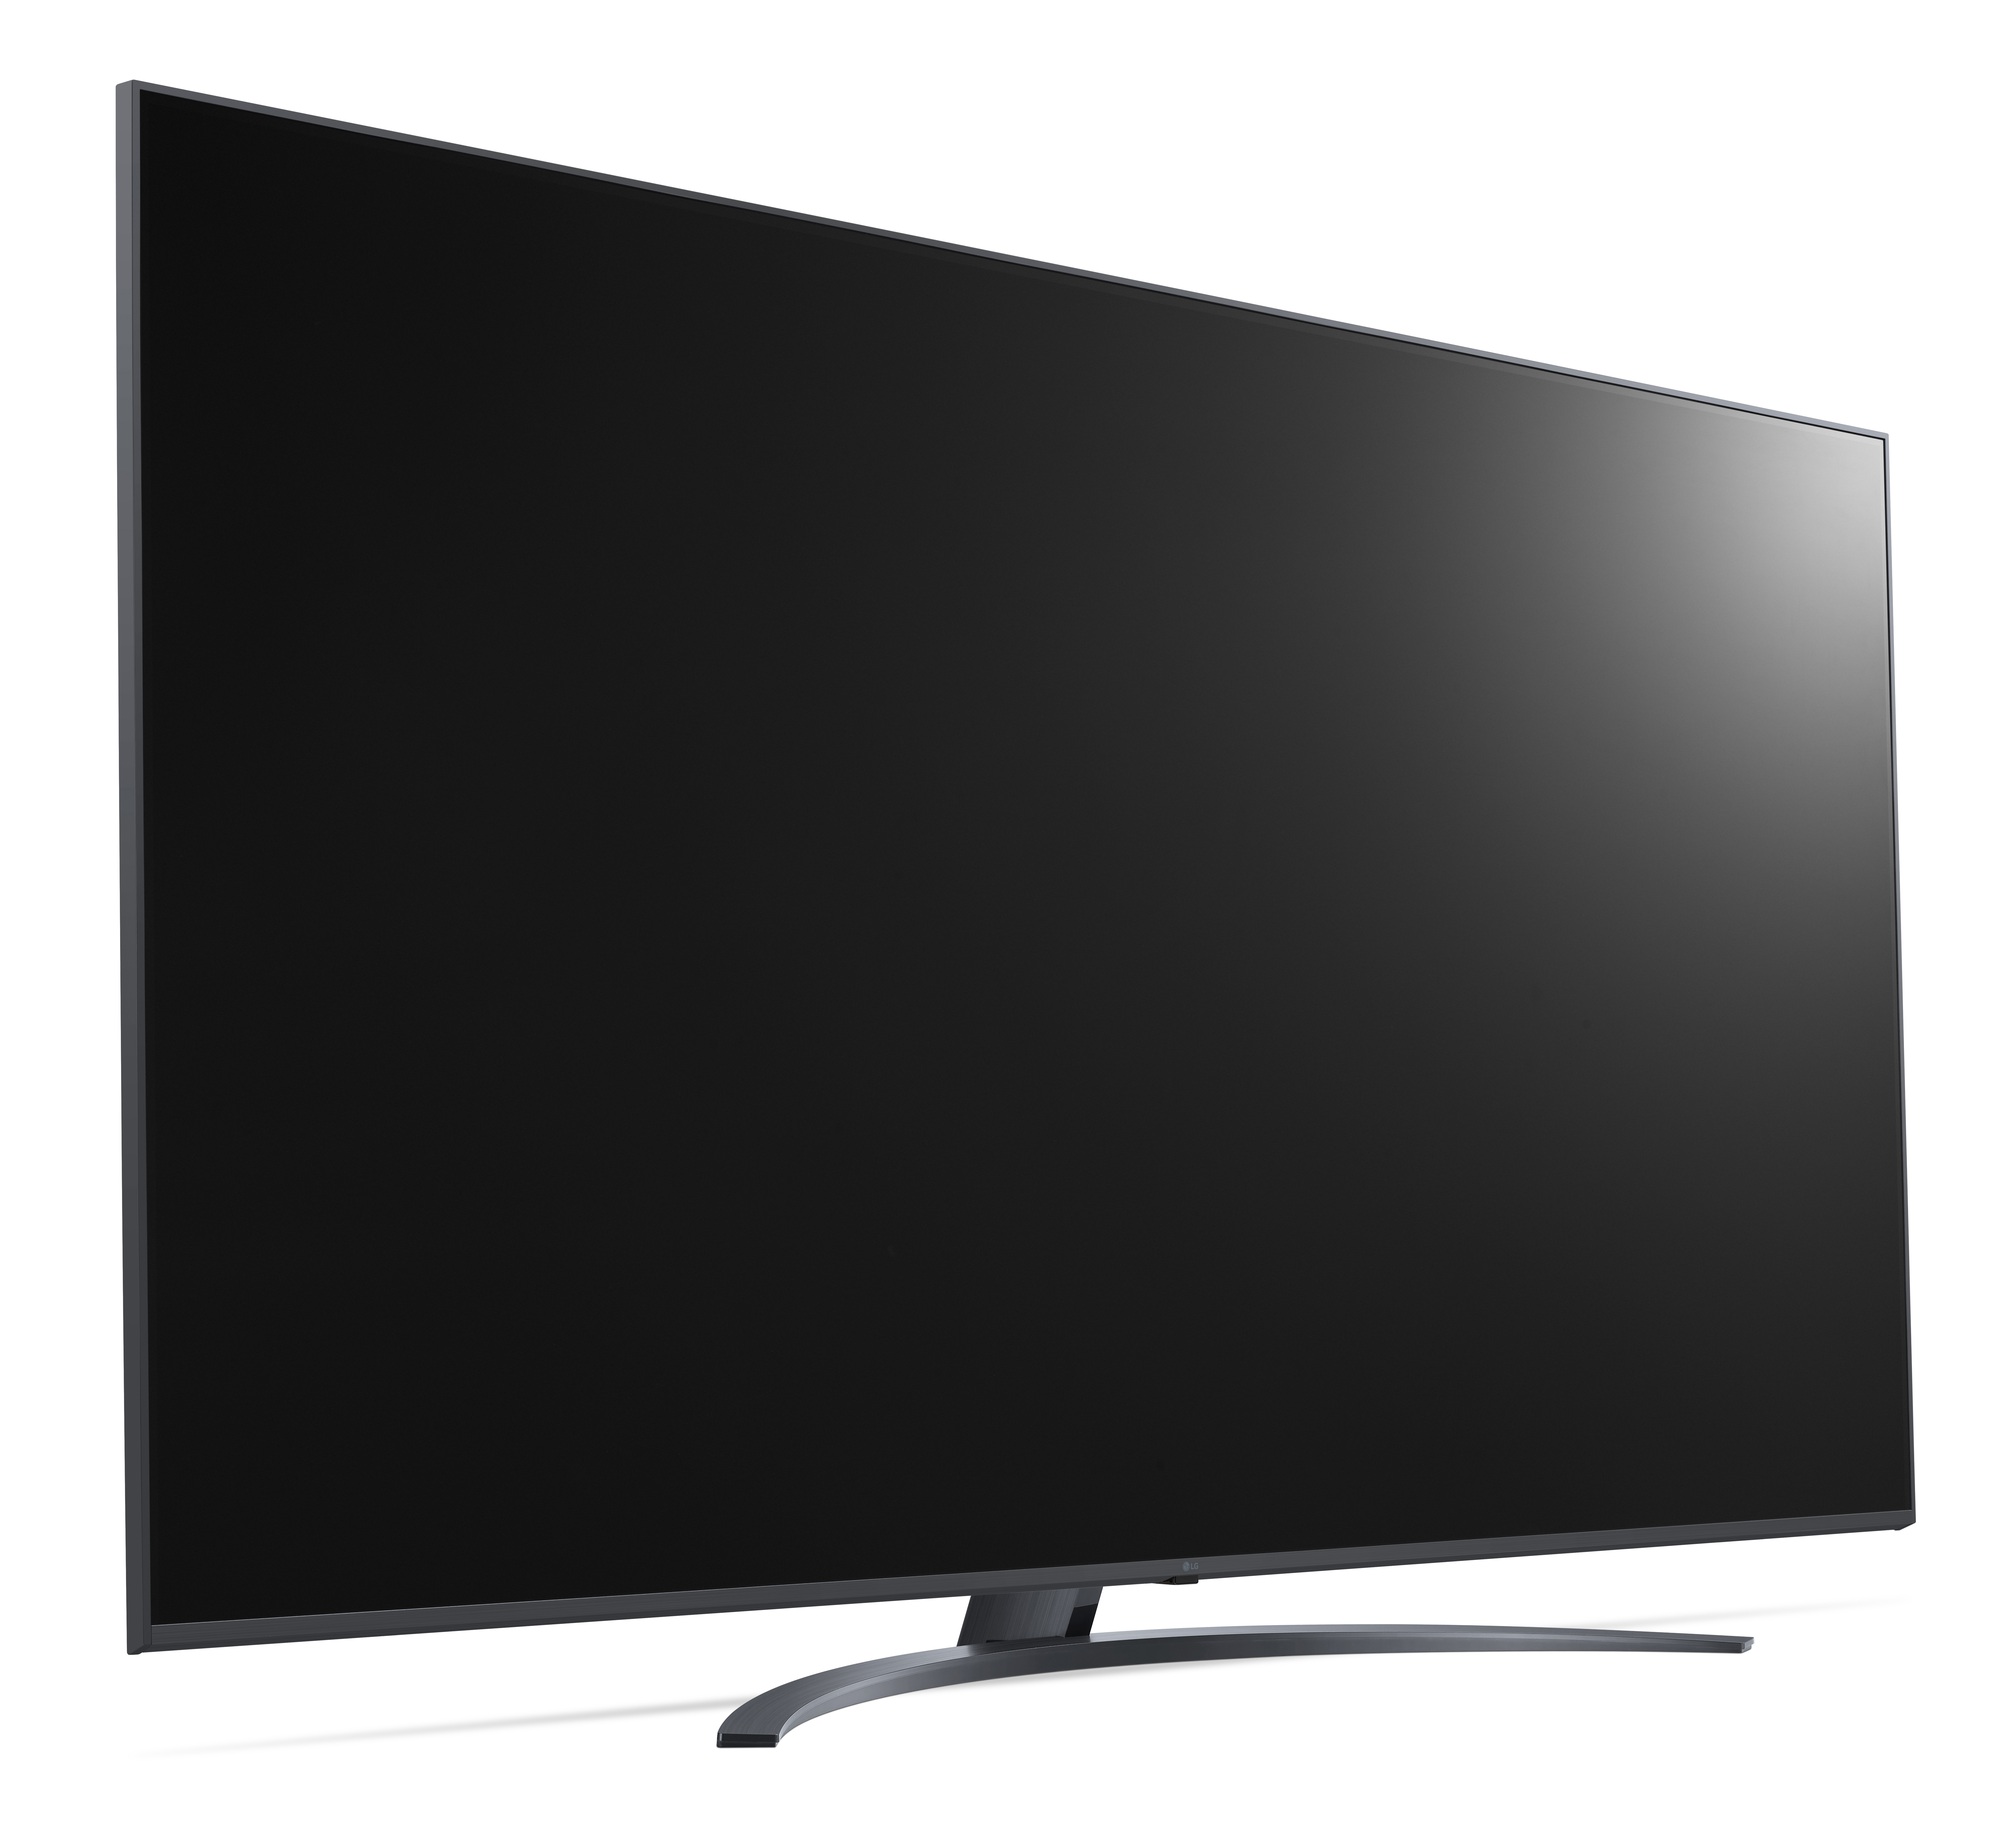 LG ra mắt loạt TV mới, đánh dấu 10 năm gia nhập thị trường TV OLED toàn cầu - Ảnh 7.